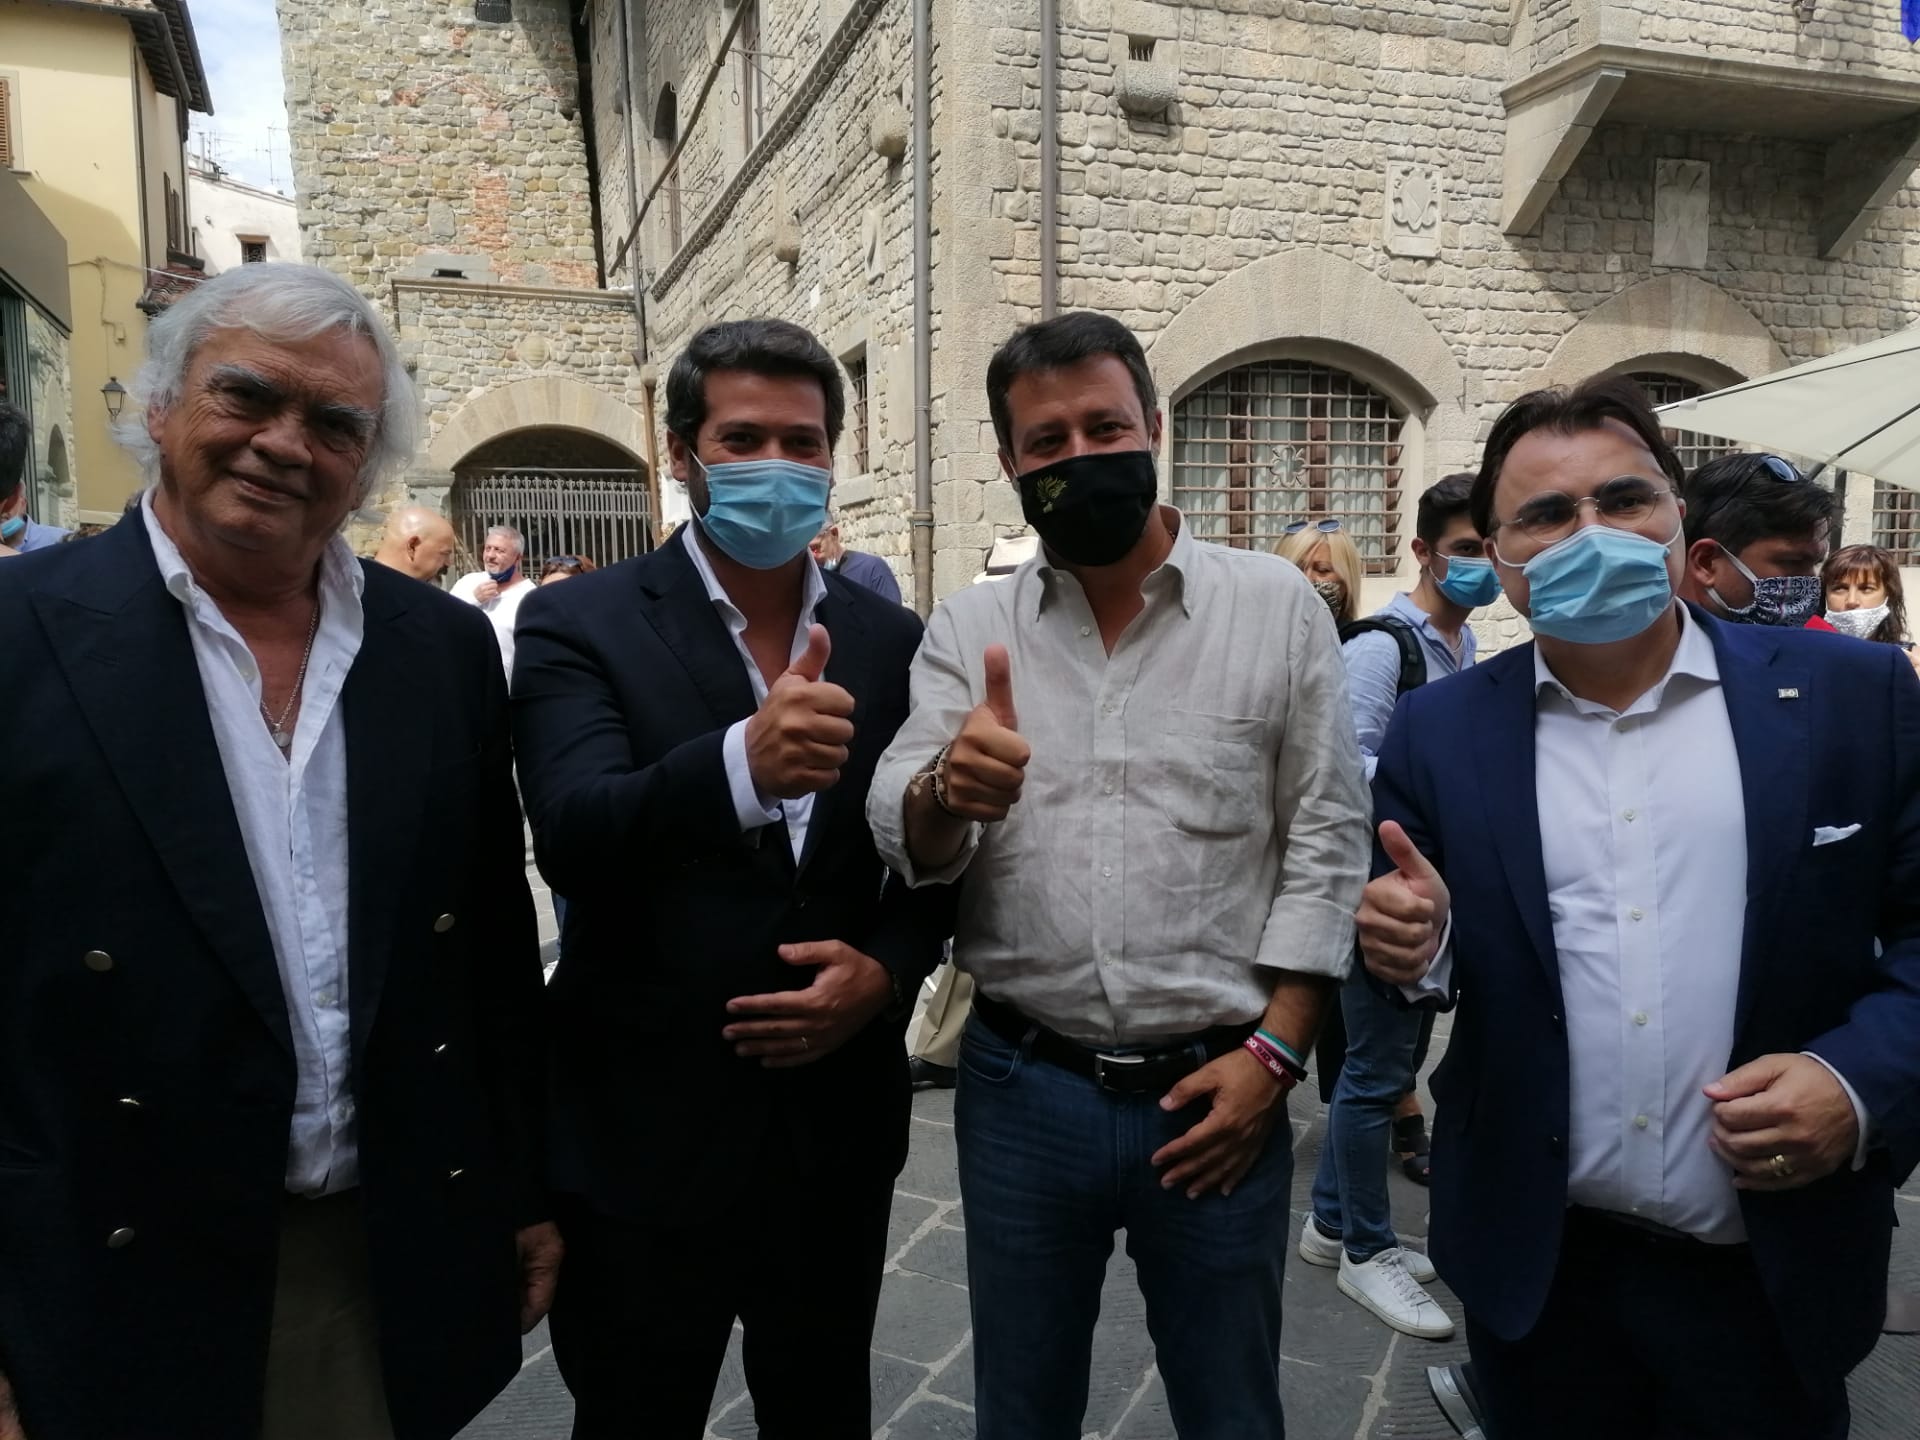 Ventura ao lado de Salvini em Florença